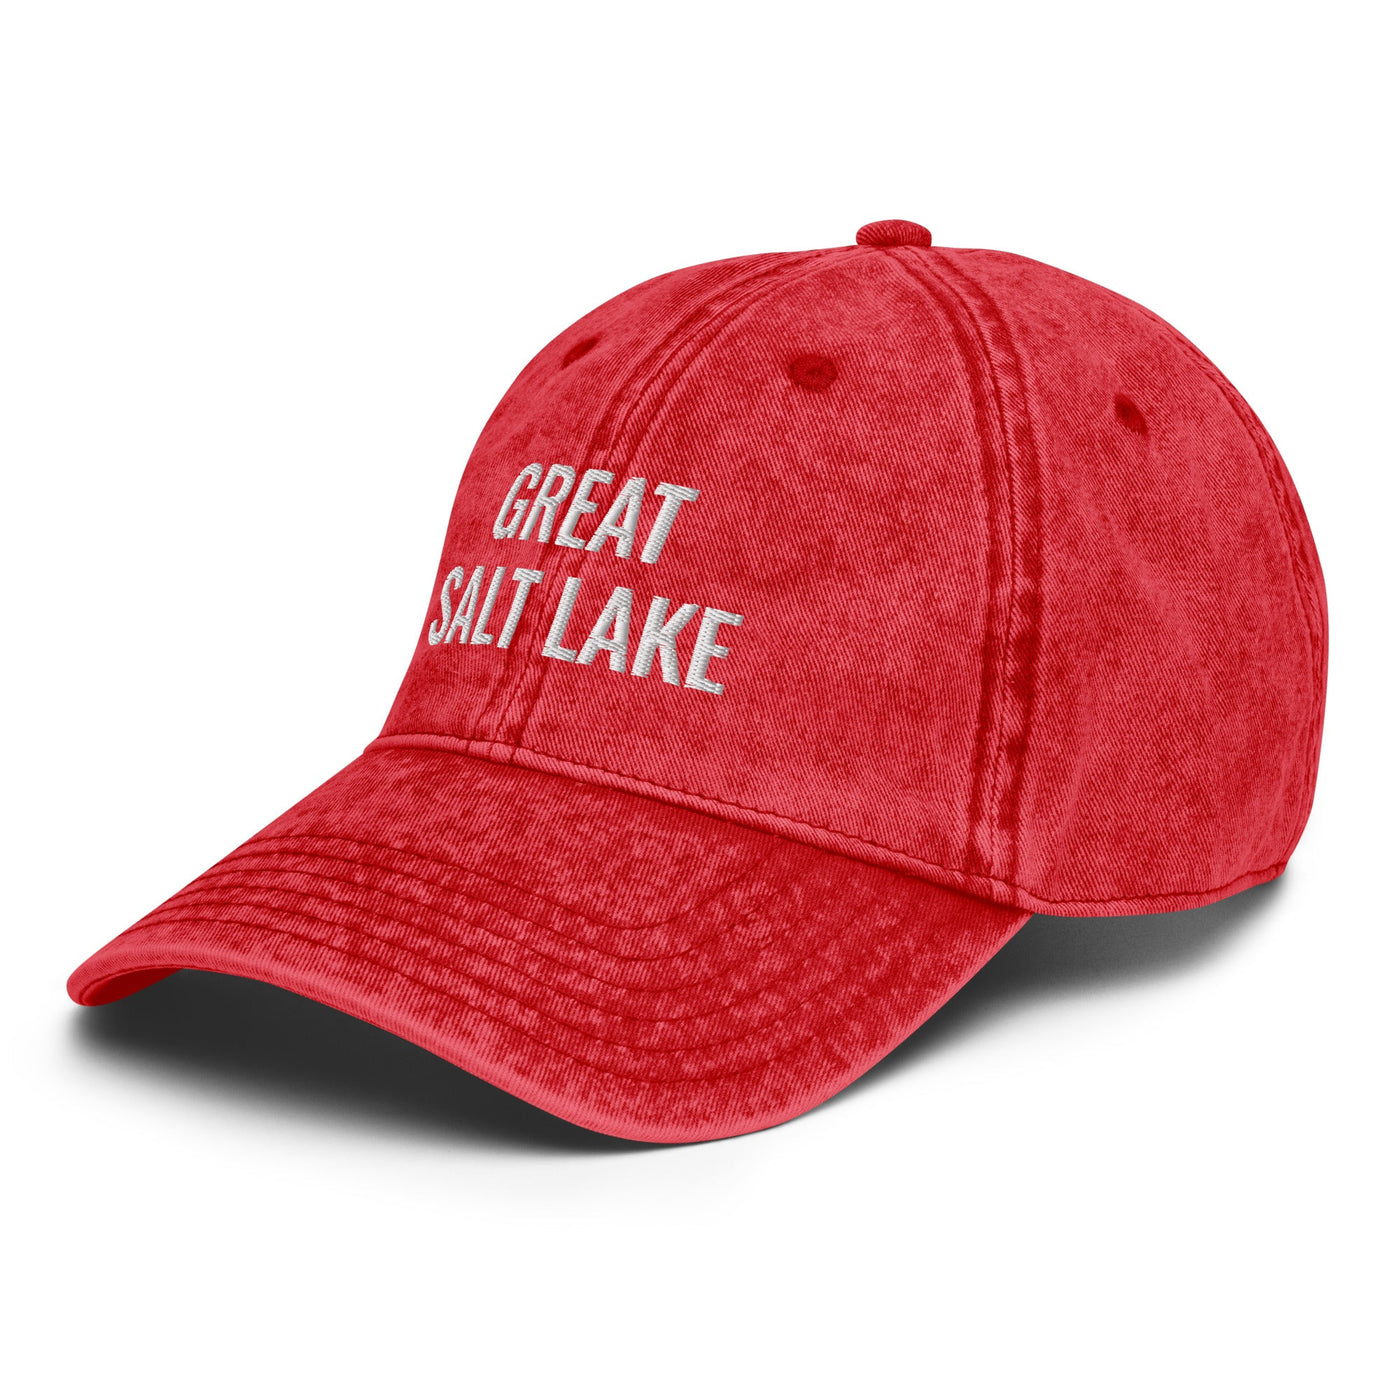 Great Salt Lake Hat - Ezra's Clothing